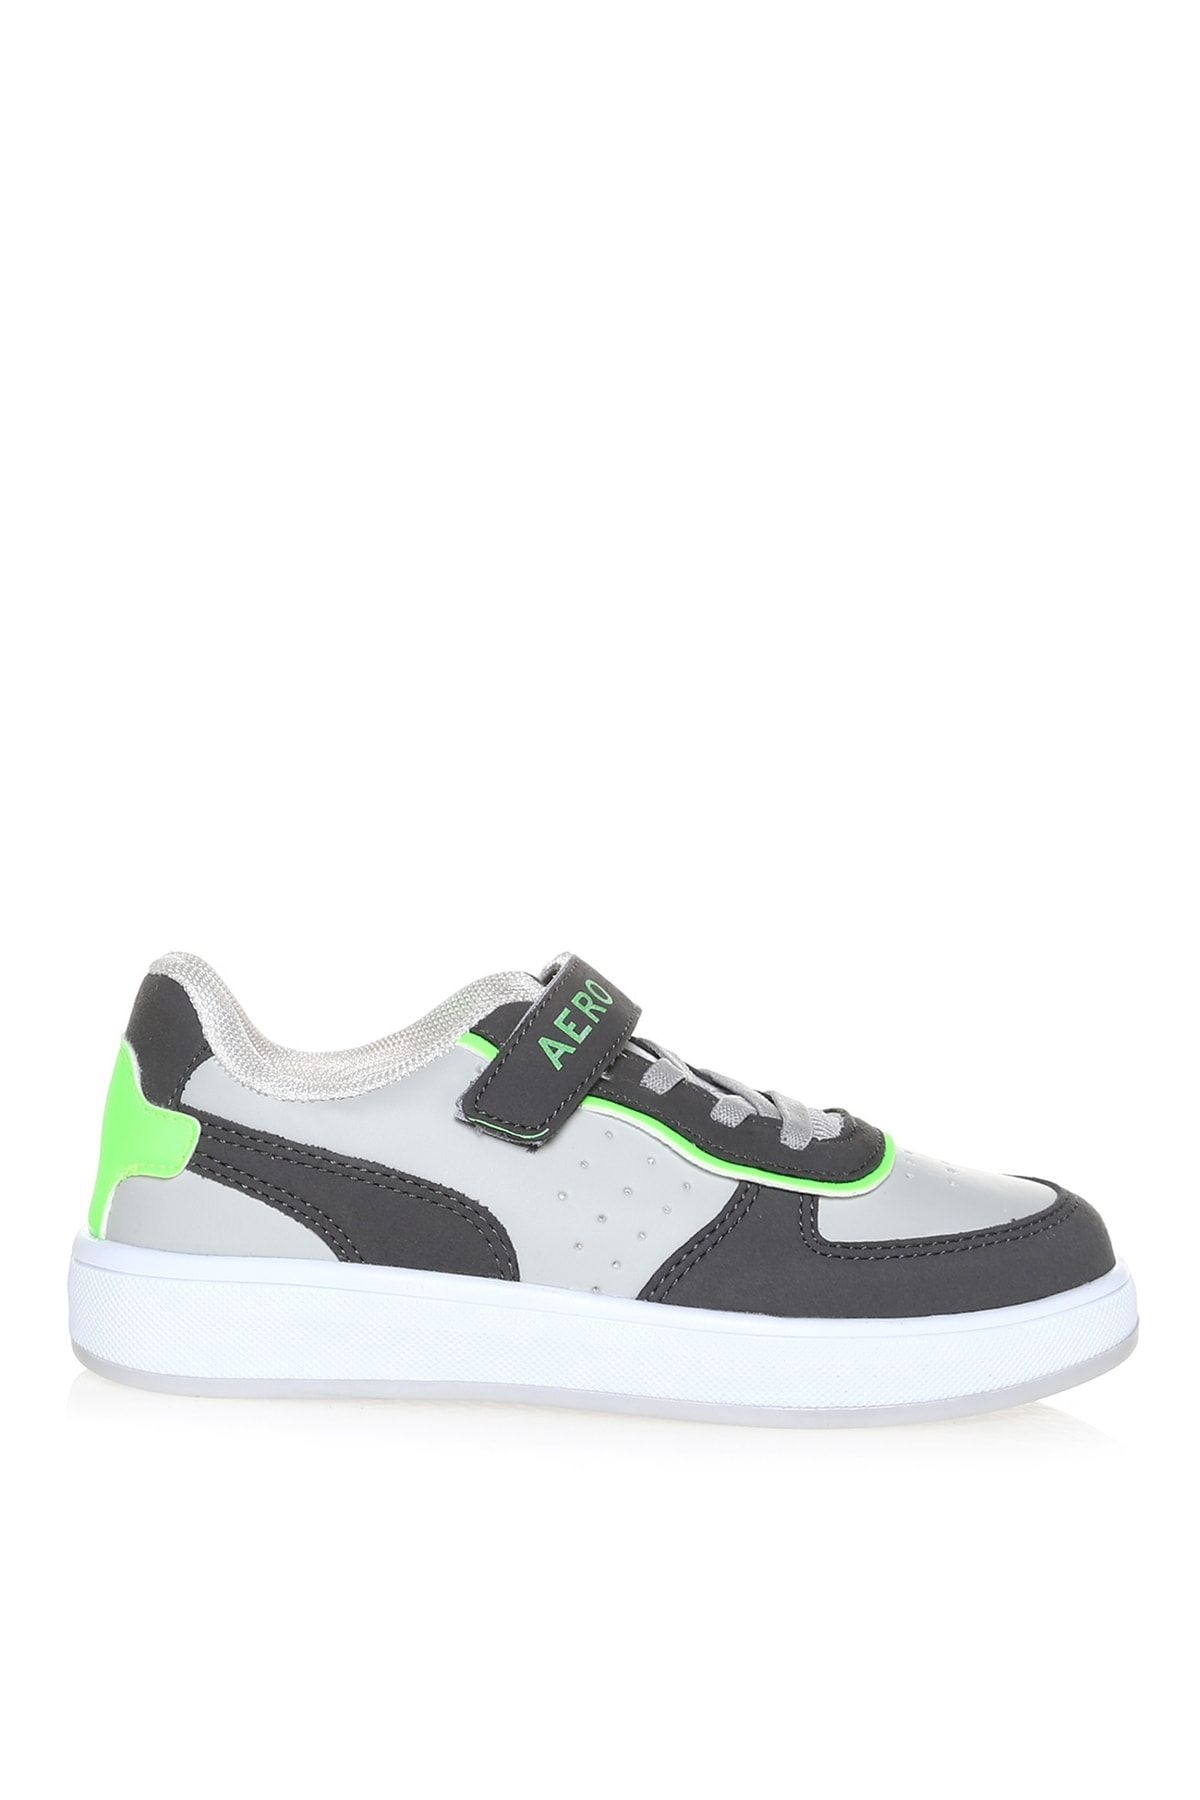 Aeropostale Siyah - Gri - Yeşil Erkek Çocuk Sneaker Innana New